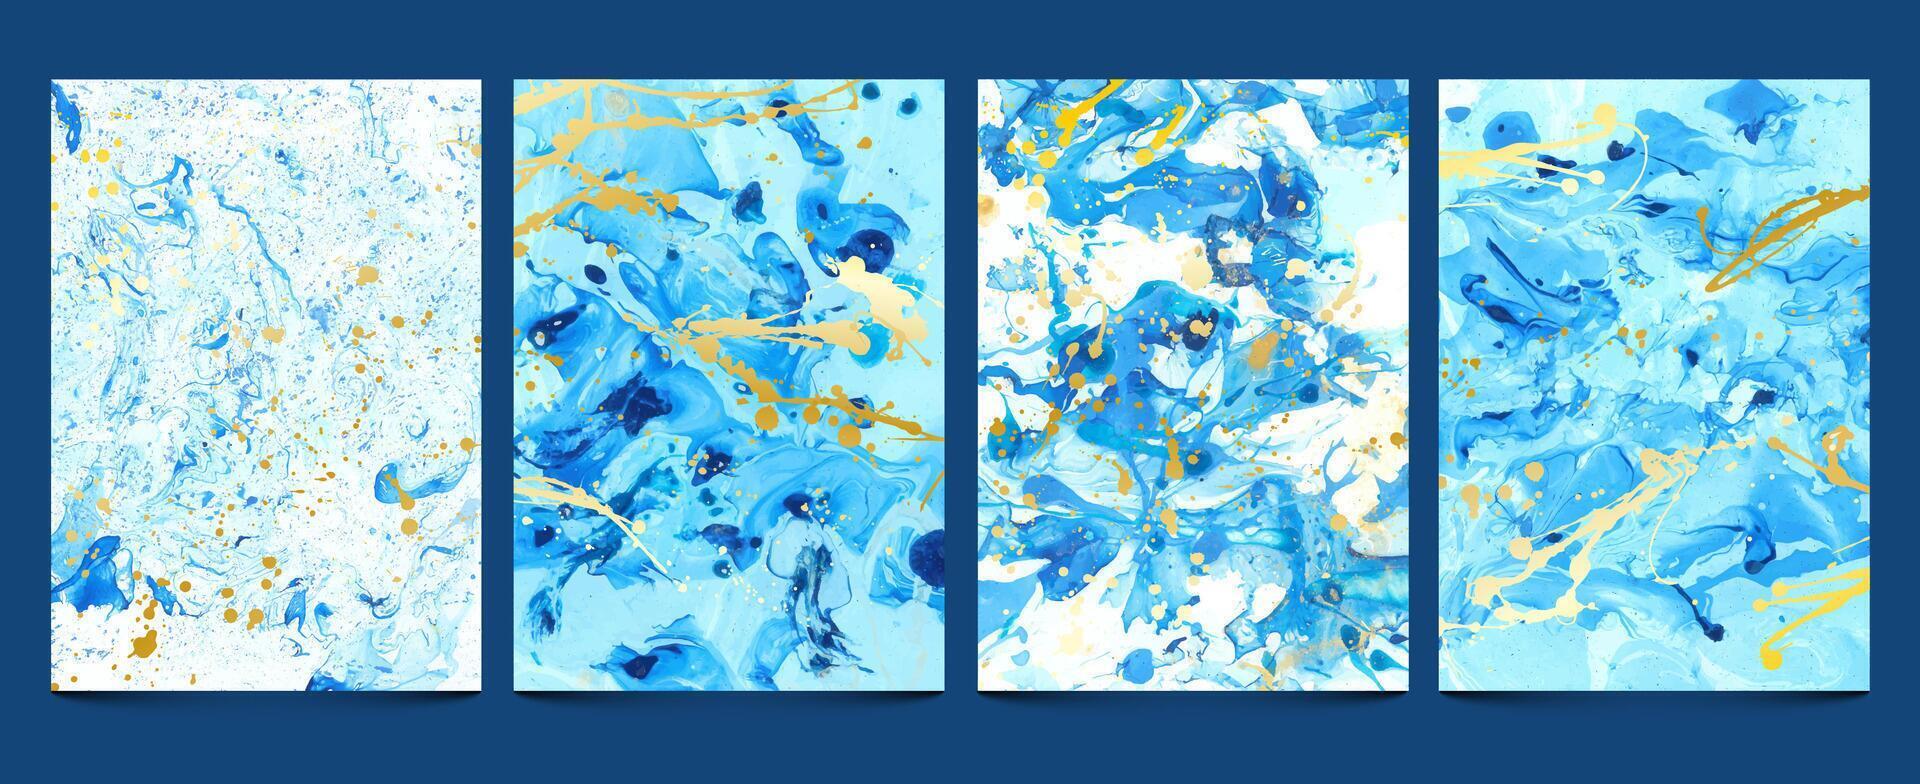 Aquarell Flüssigkeit. modern Blau Marmor Texturen mit golden Spritzer. abstrakt Wasser Muster, Flüssigkeit malen, Stein Geode Design. Tinte druckt einstellen vektor